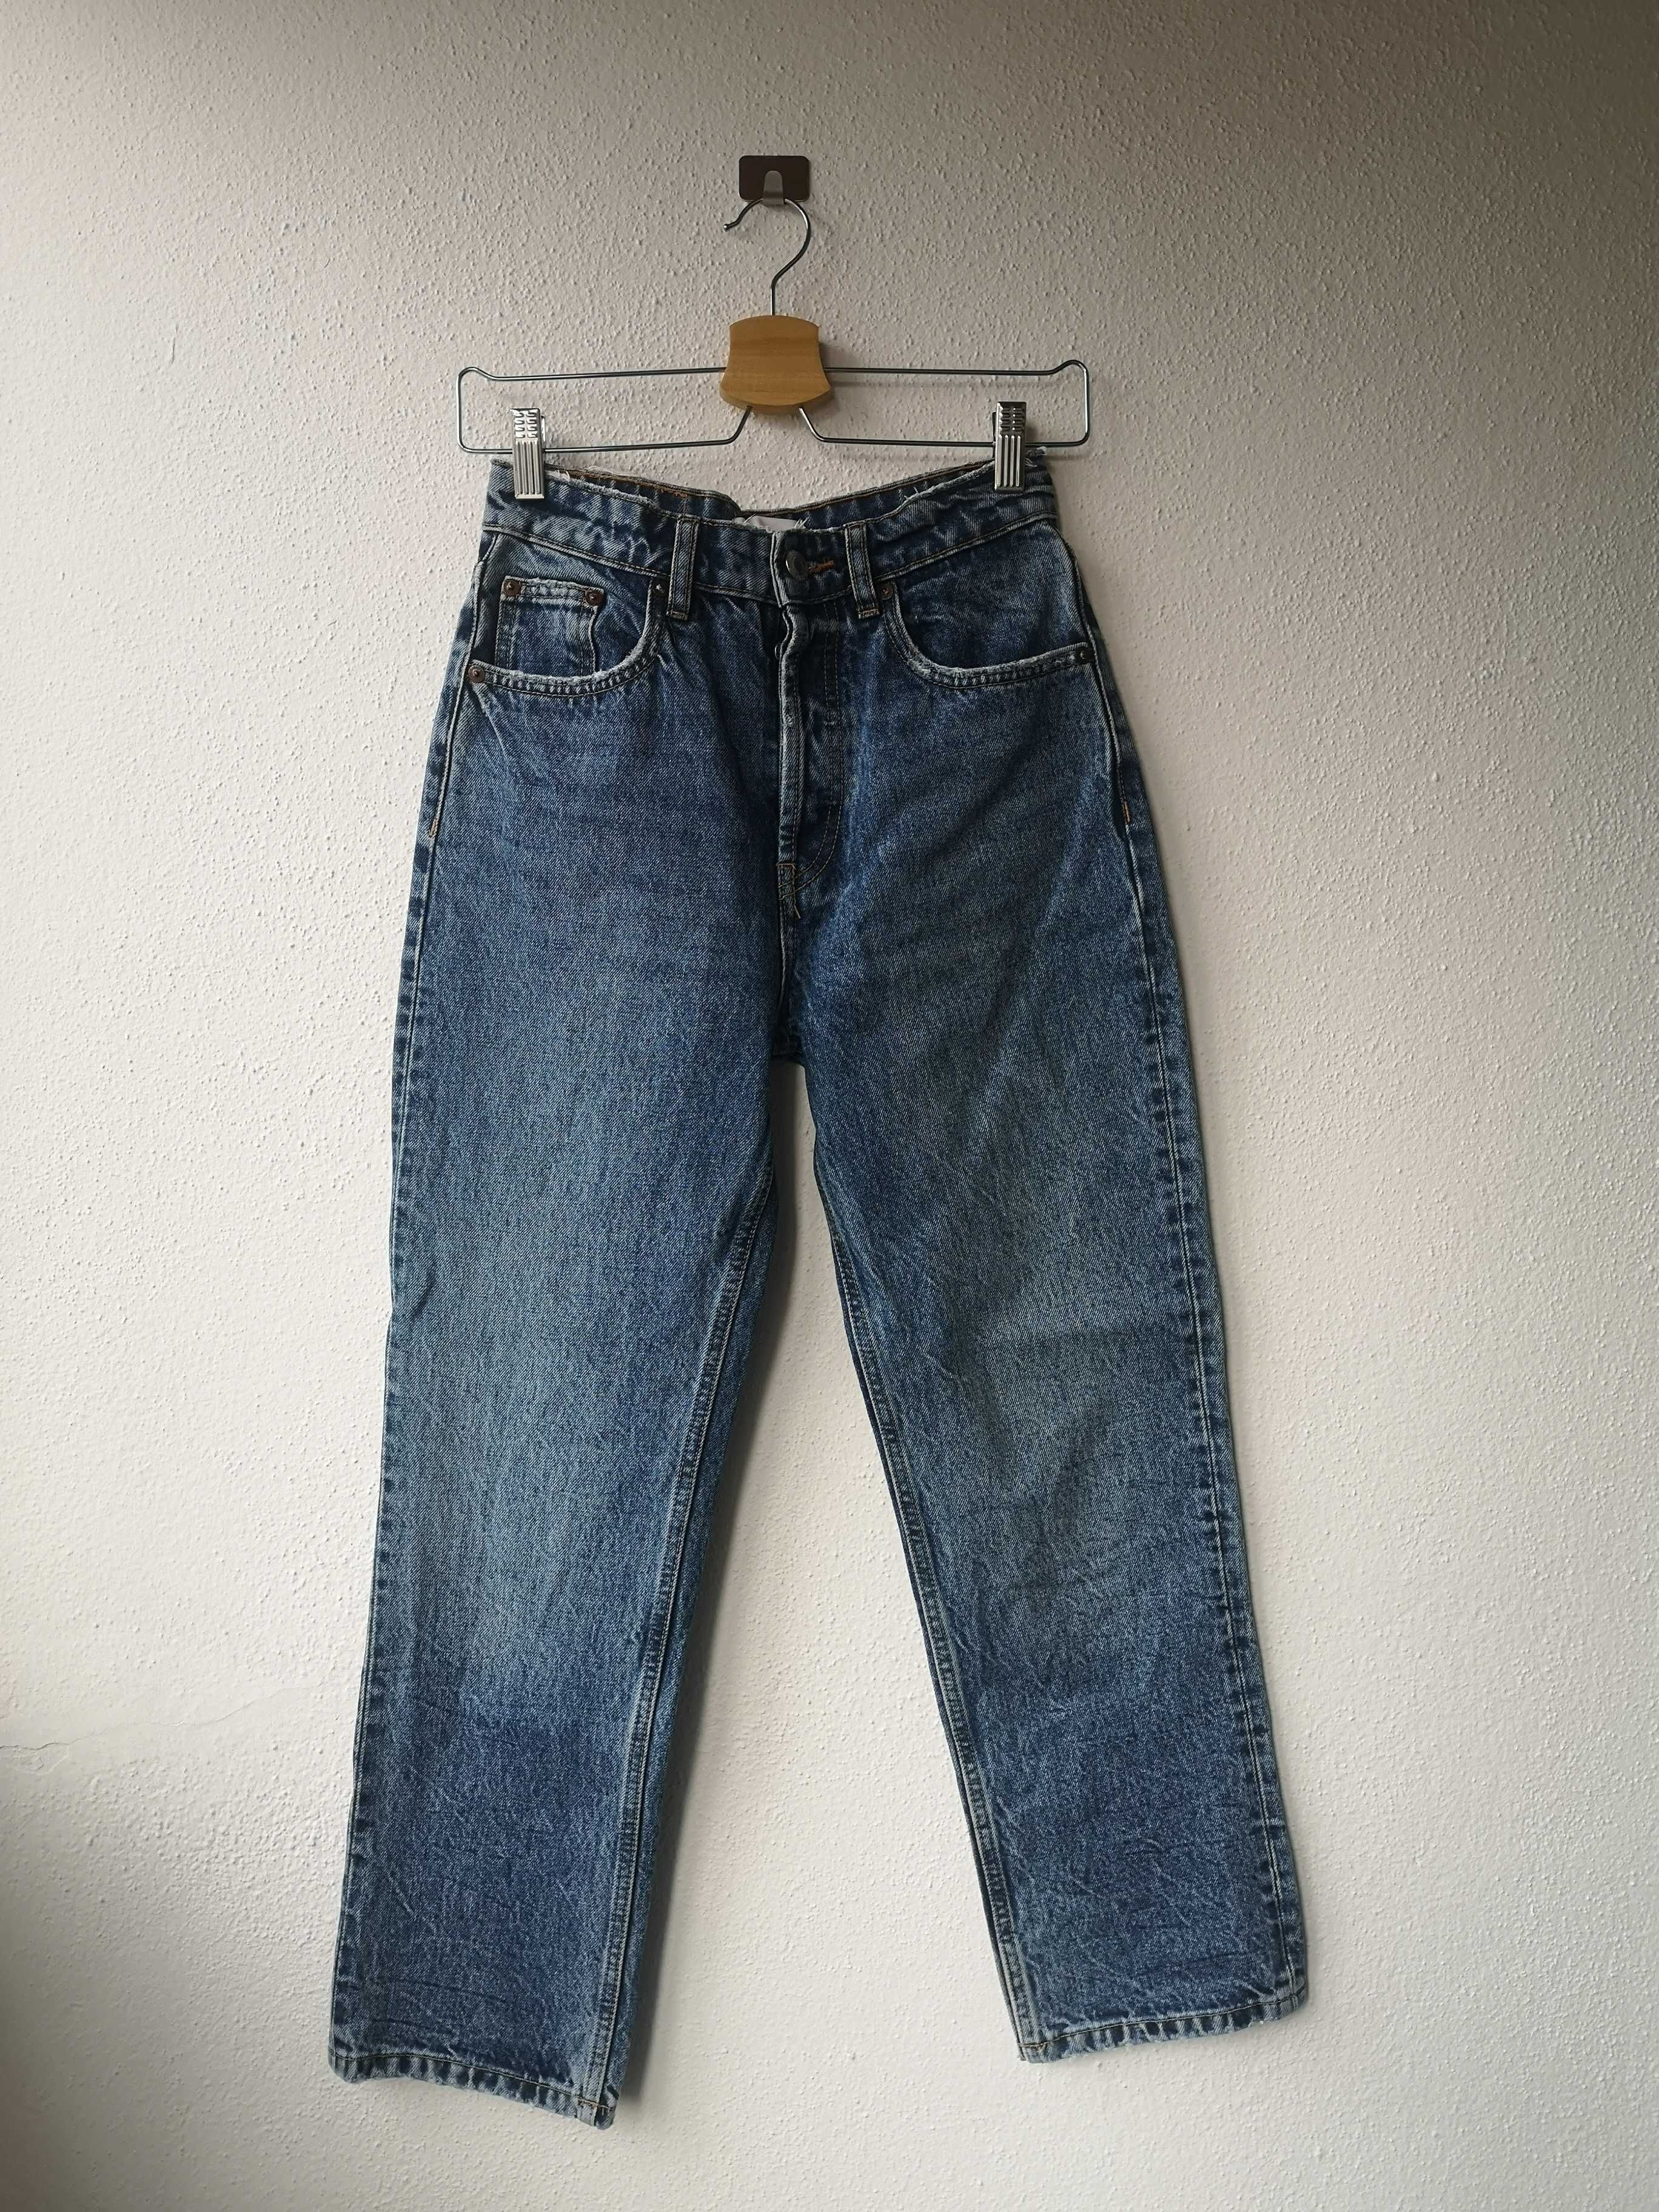 Mom jeans Zara, tamanho 34, como novas